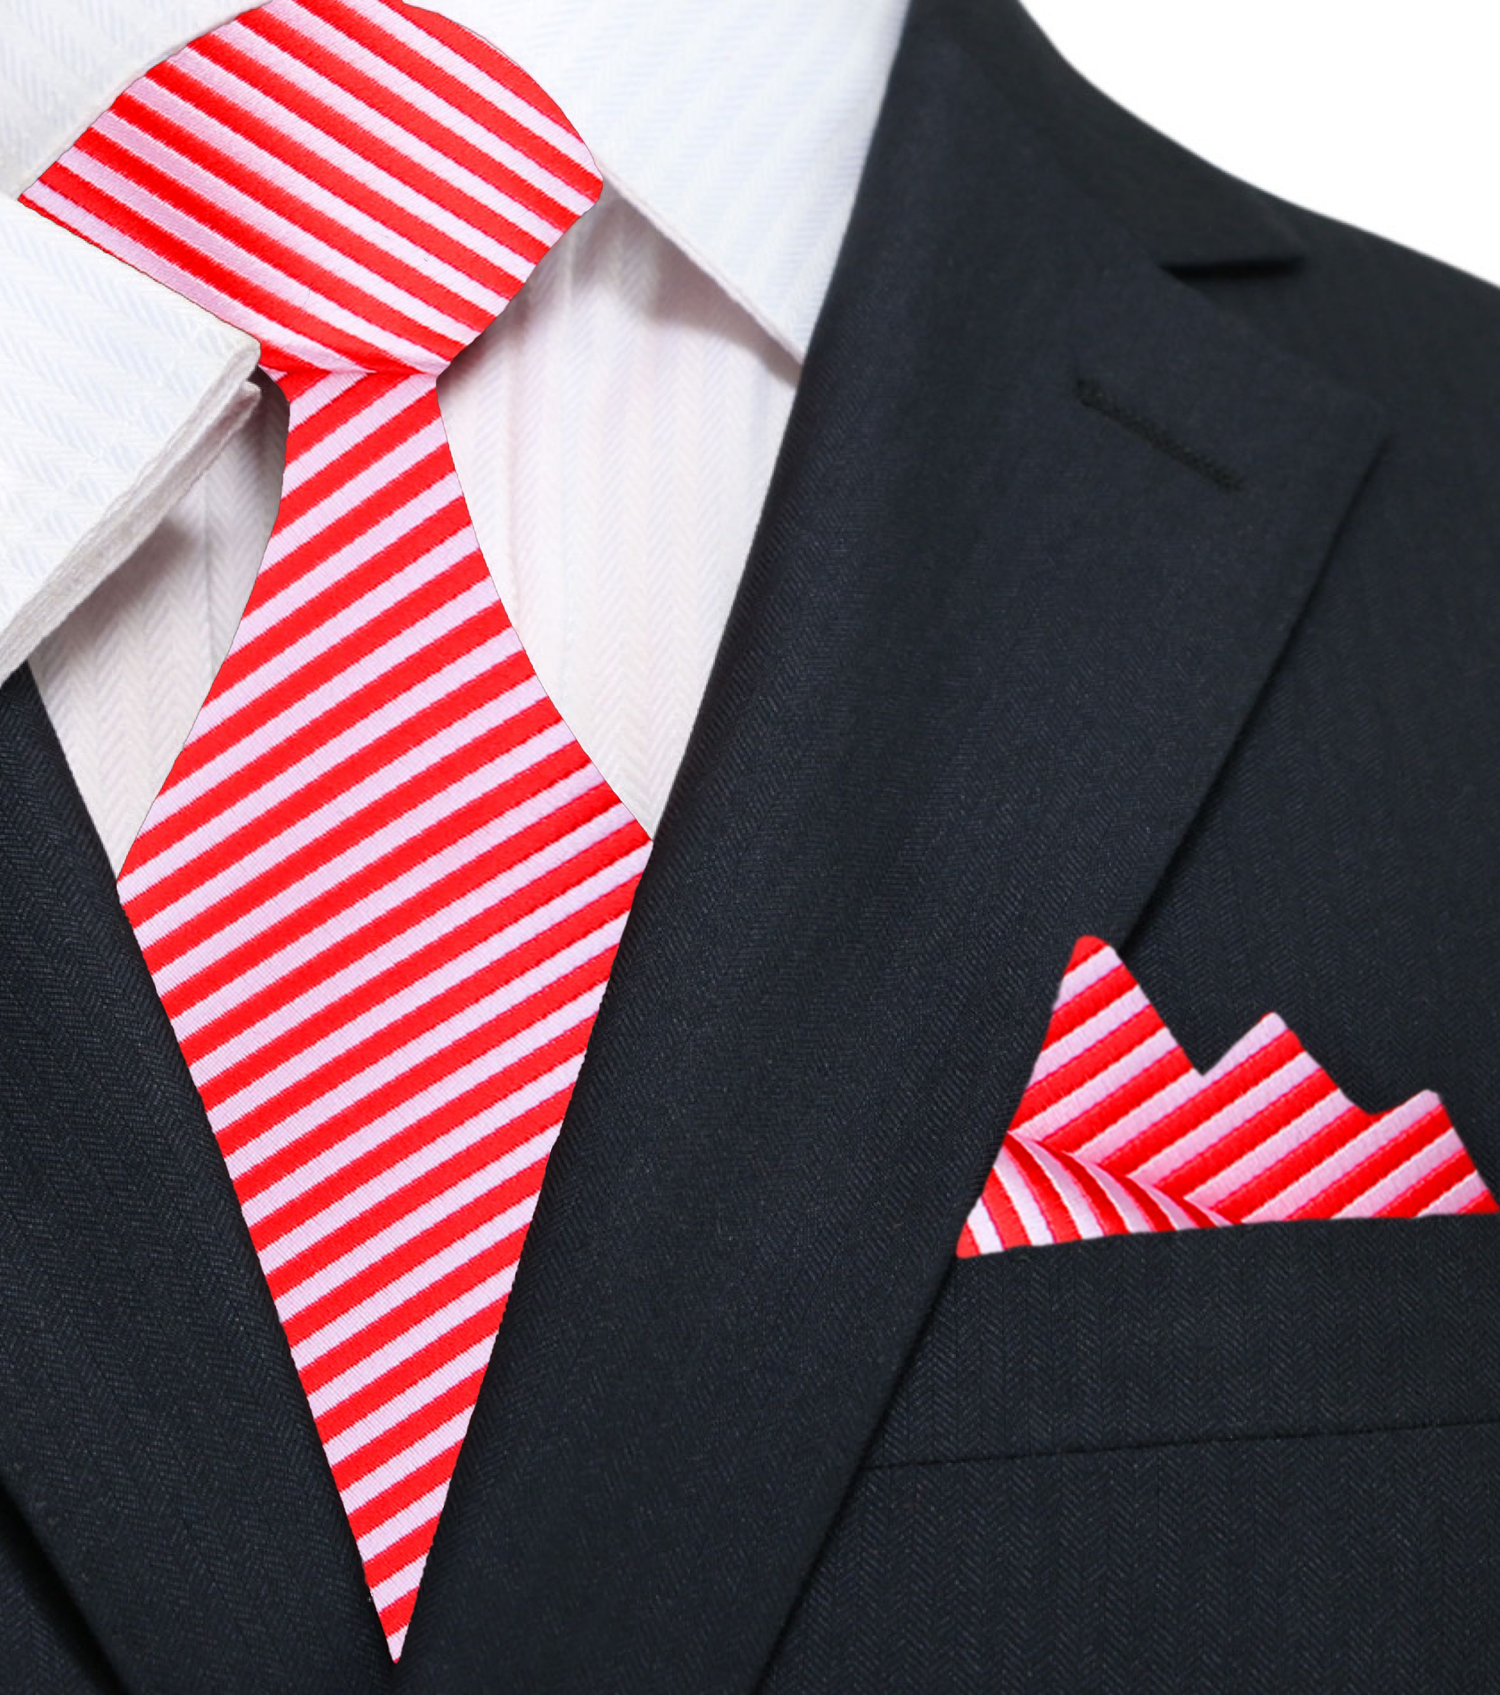 A Red, White Pinstripe Pattern Silk Necktie, Matching Pocket Square